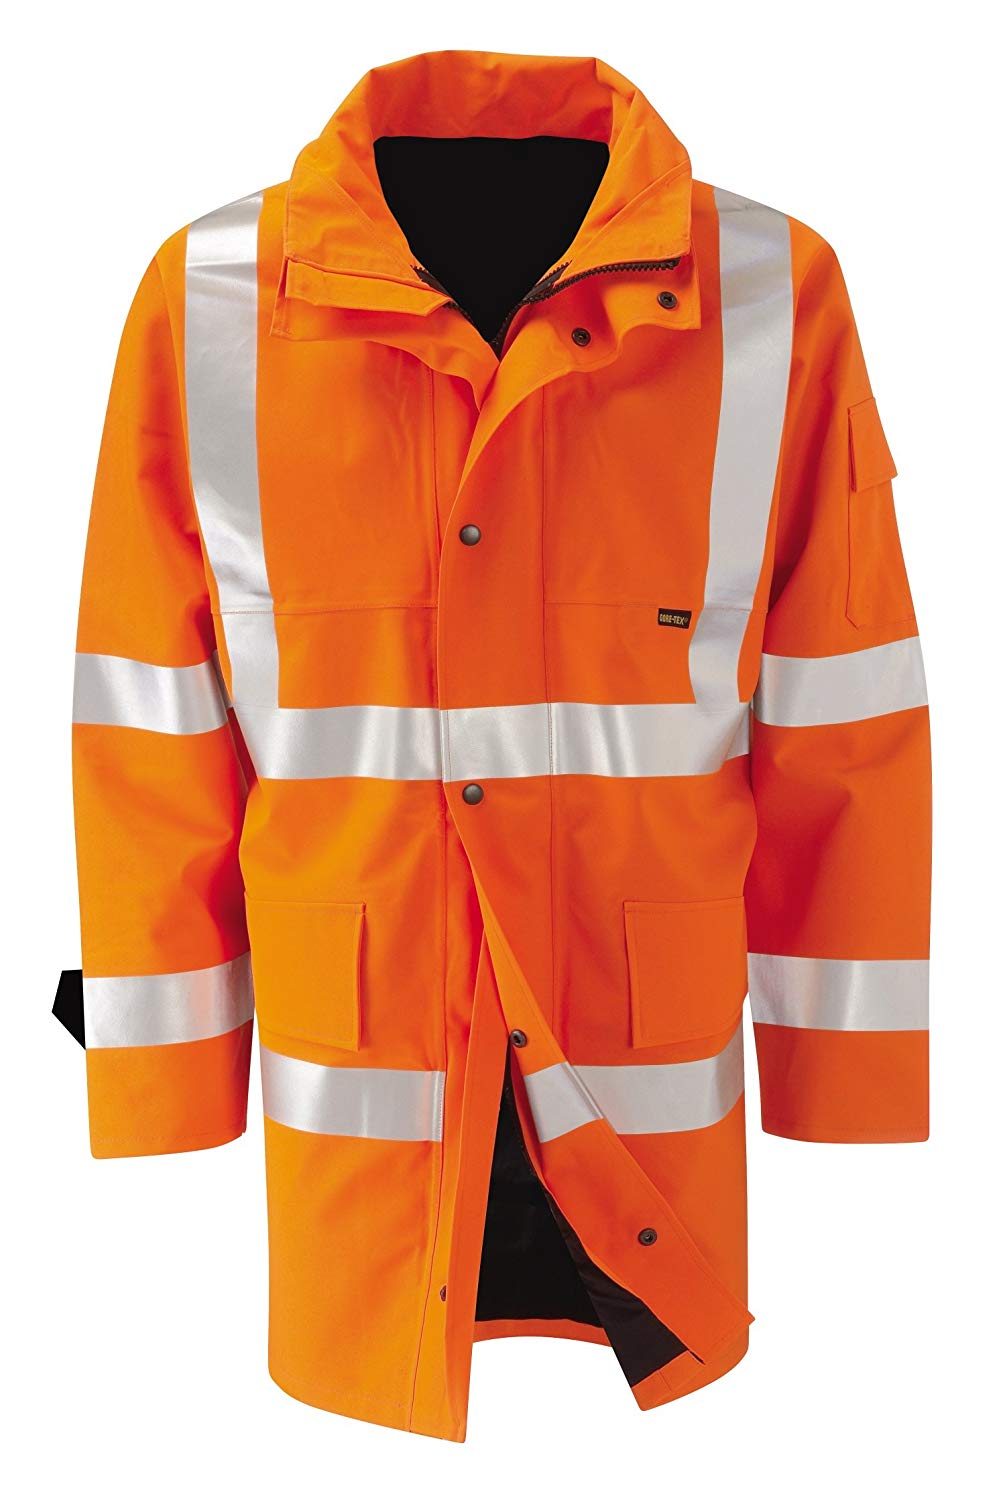 Orbit International GB2 FWJR Hi Vis Orange Waterproof 2 Layers Gore-Tex Raincoat Work Jacket